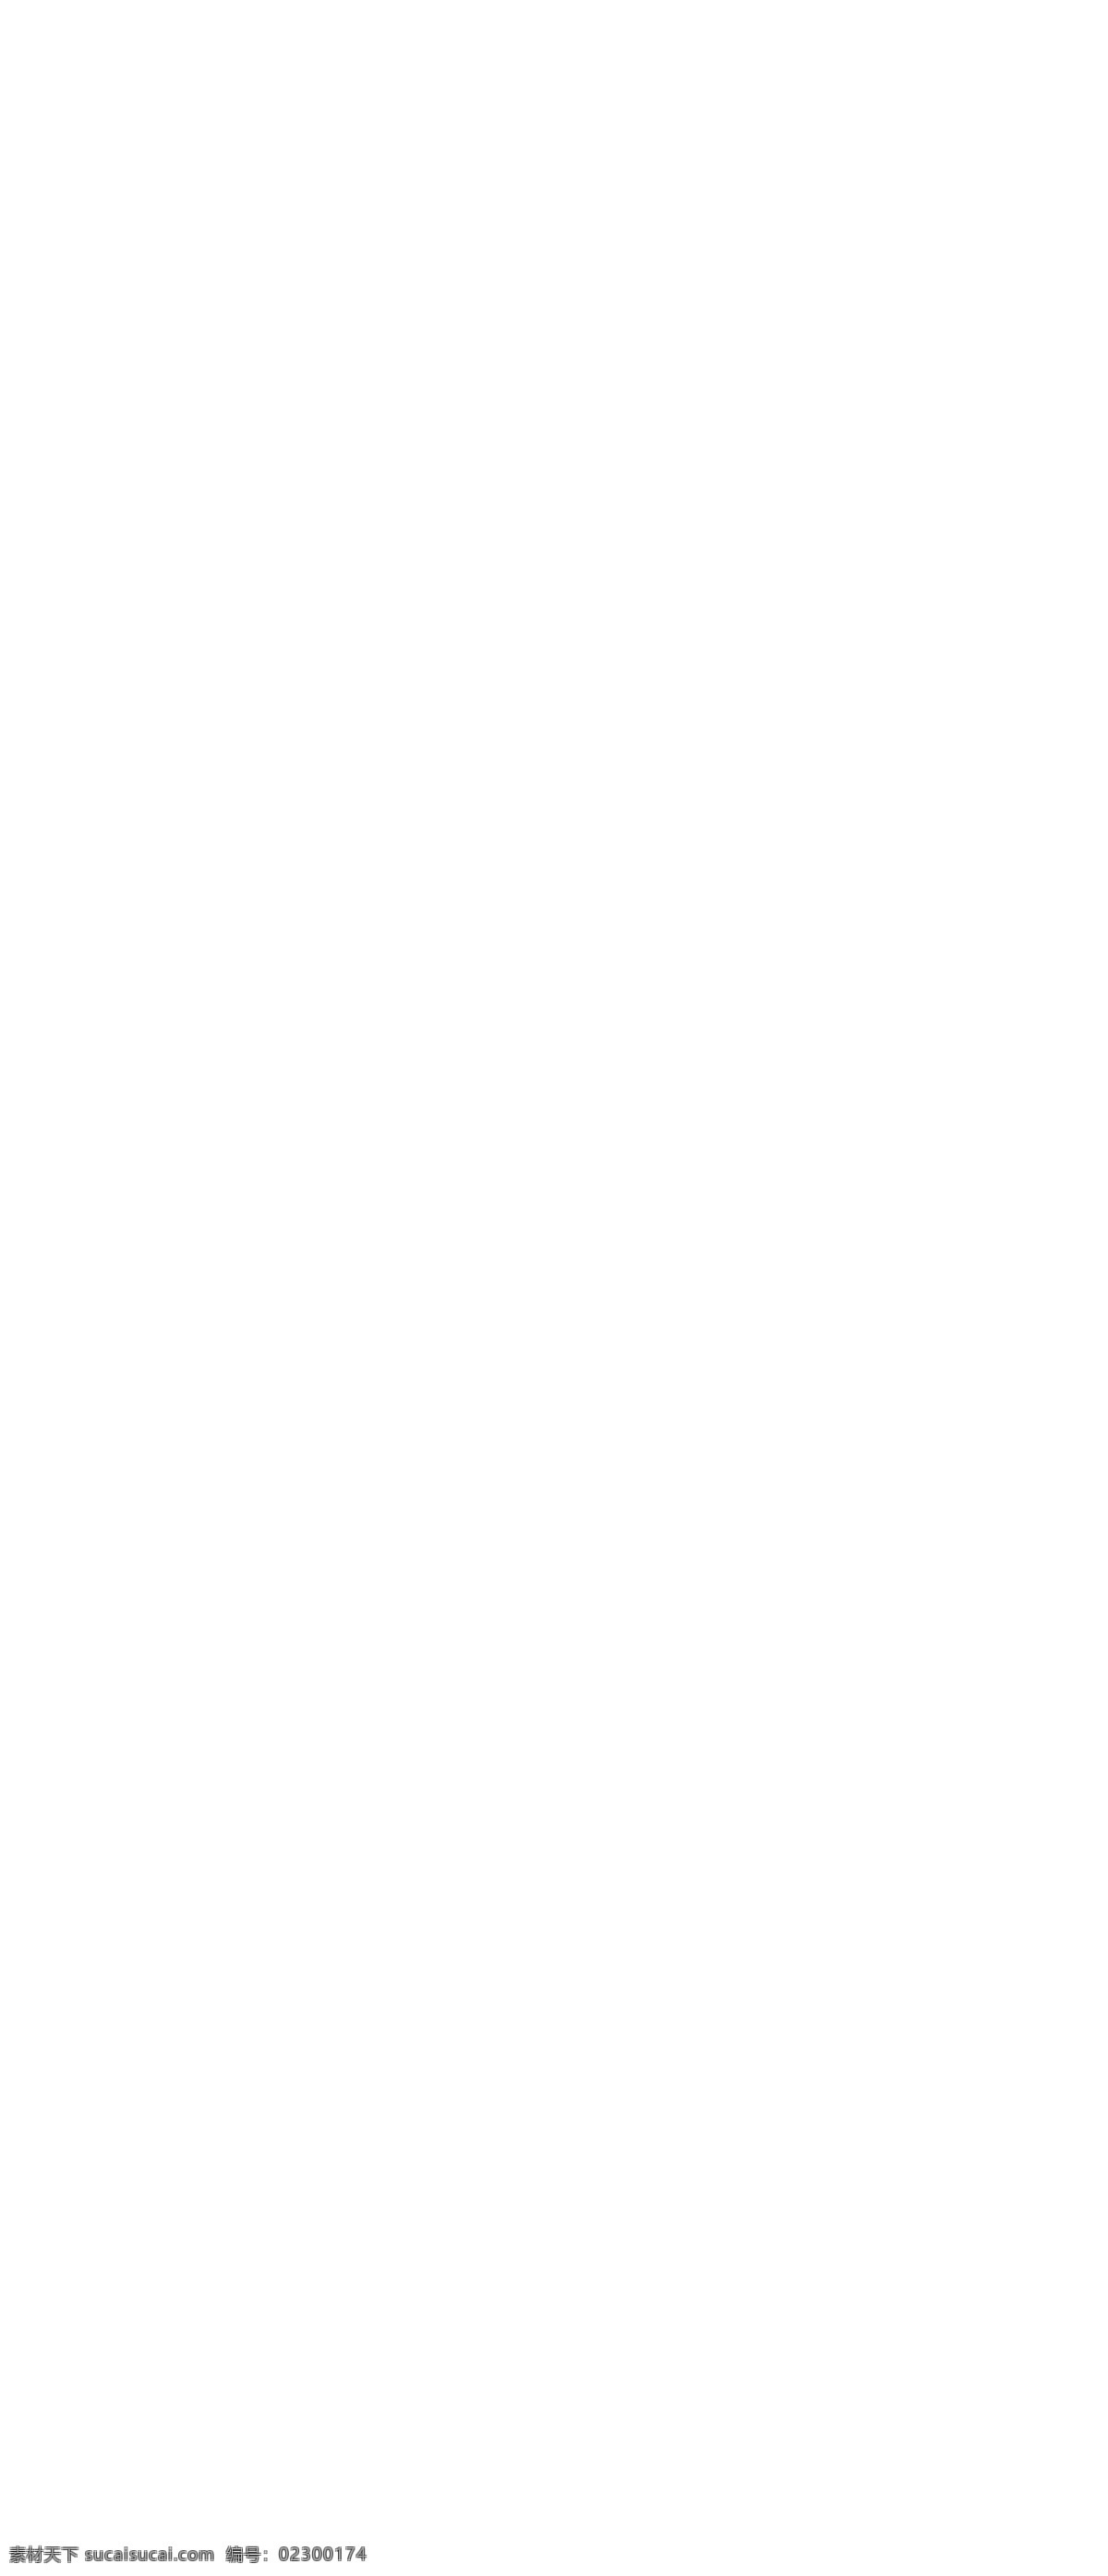 波光粼粼 海洋 风光 海水 帆船 辽阔海洋 海鸥图片 效果图